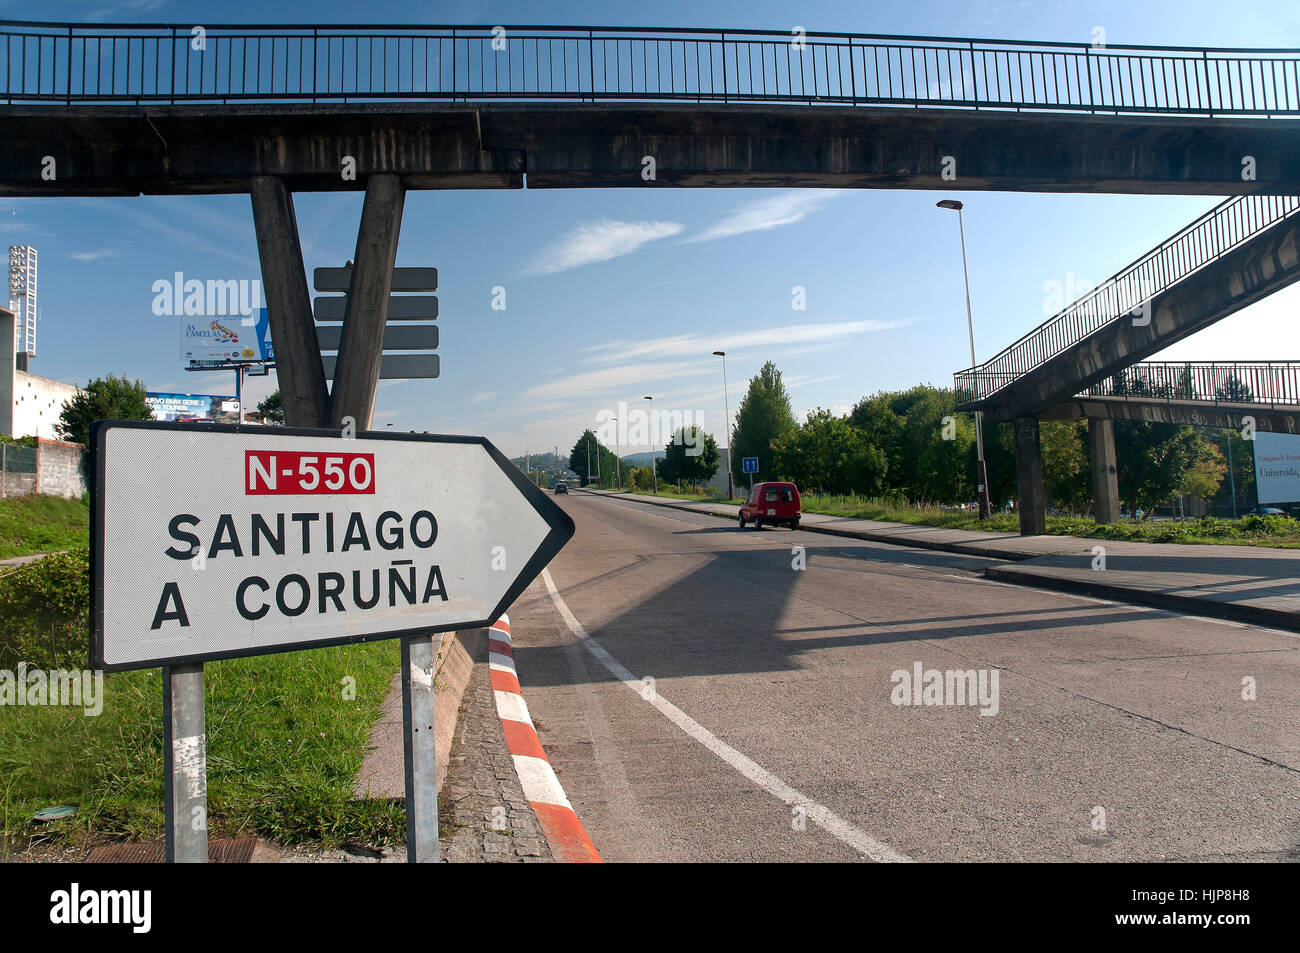 La carretera N-550 y la pasarela peatonal, Pontevedra, en la región de Galicia, España, Europa Foto de stock